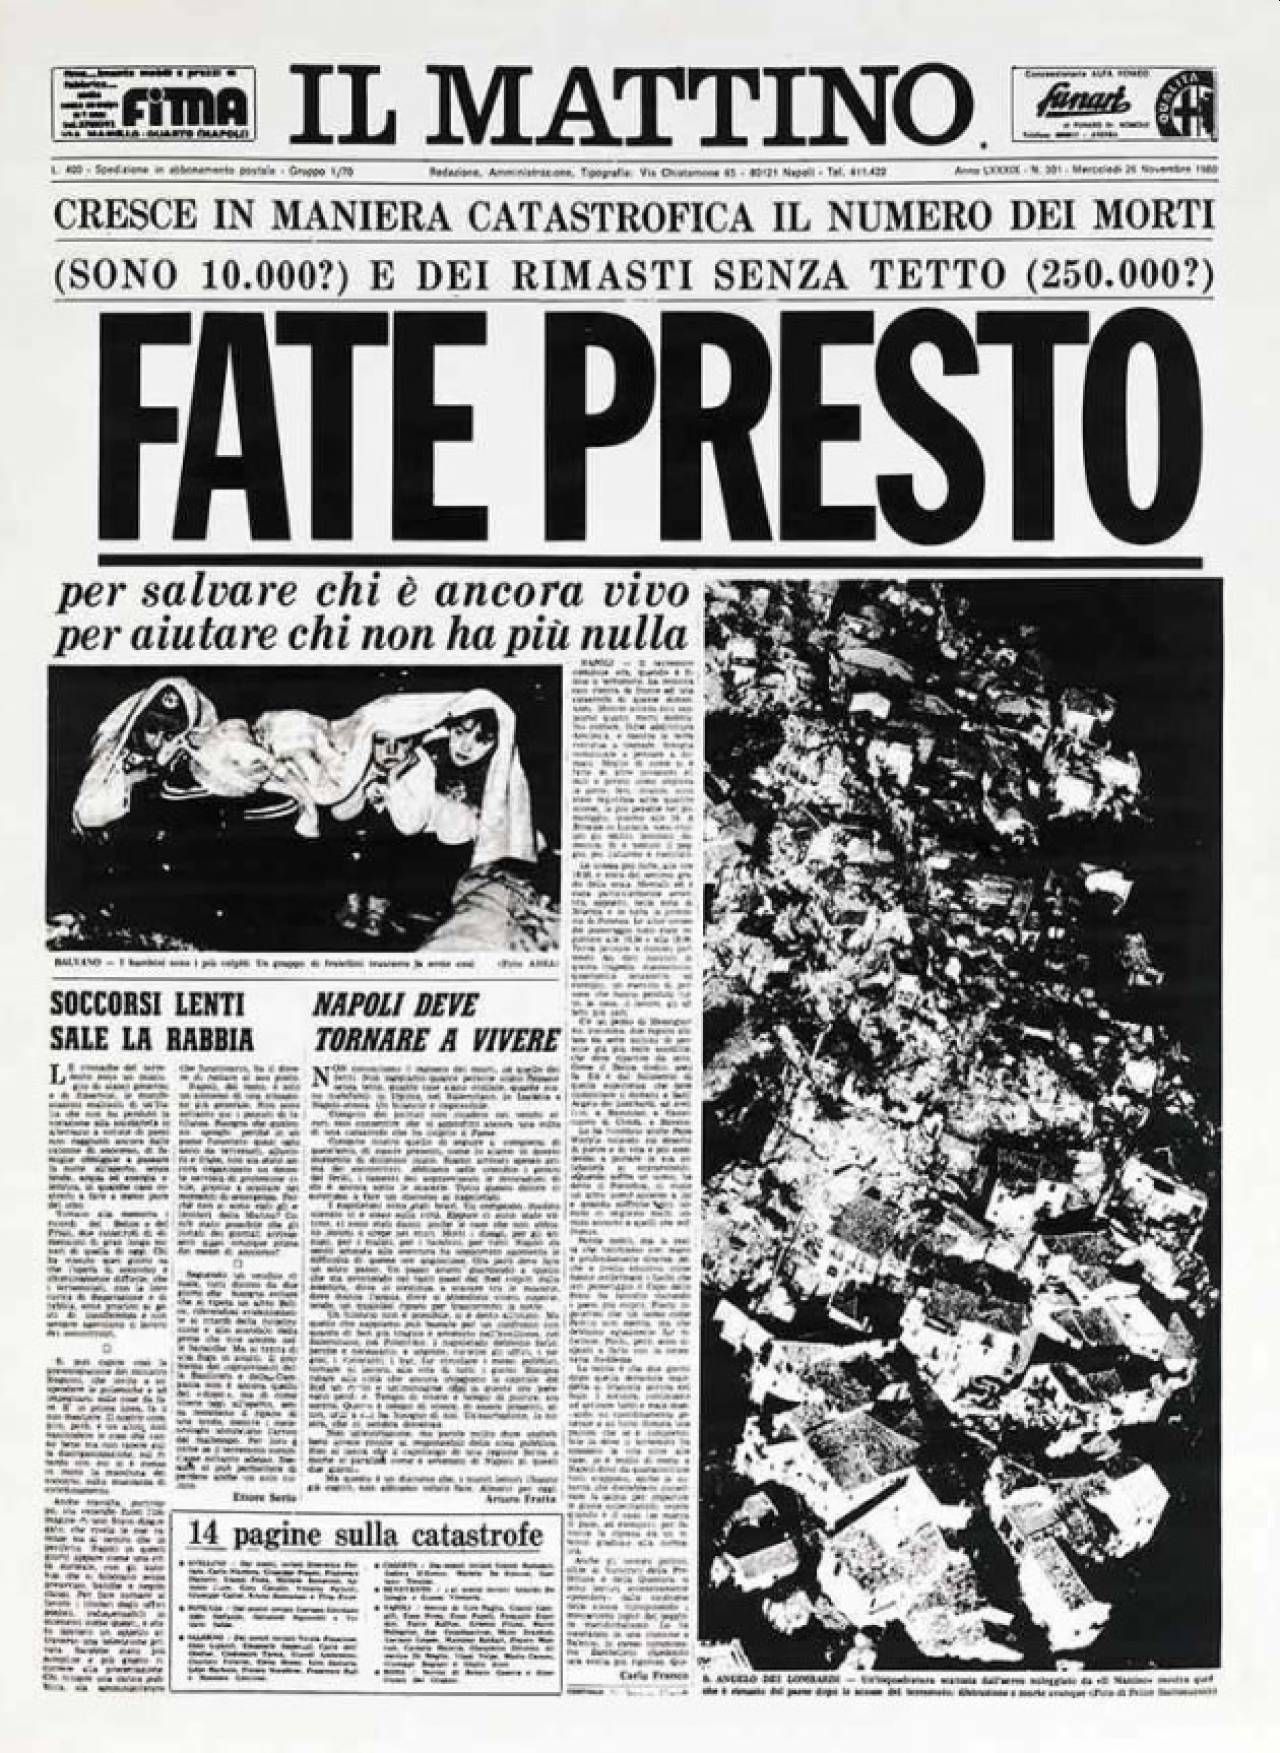 Prima pagina de Il Mattino, terremoto in Irpinia 1980: Fate Presto